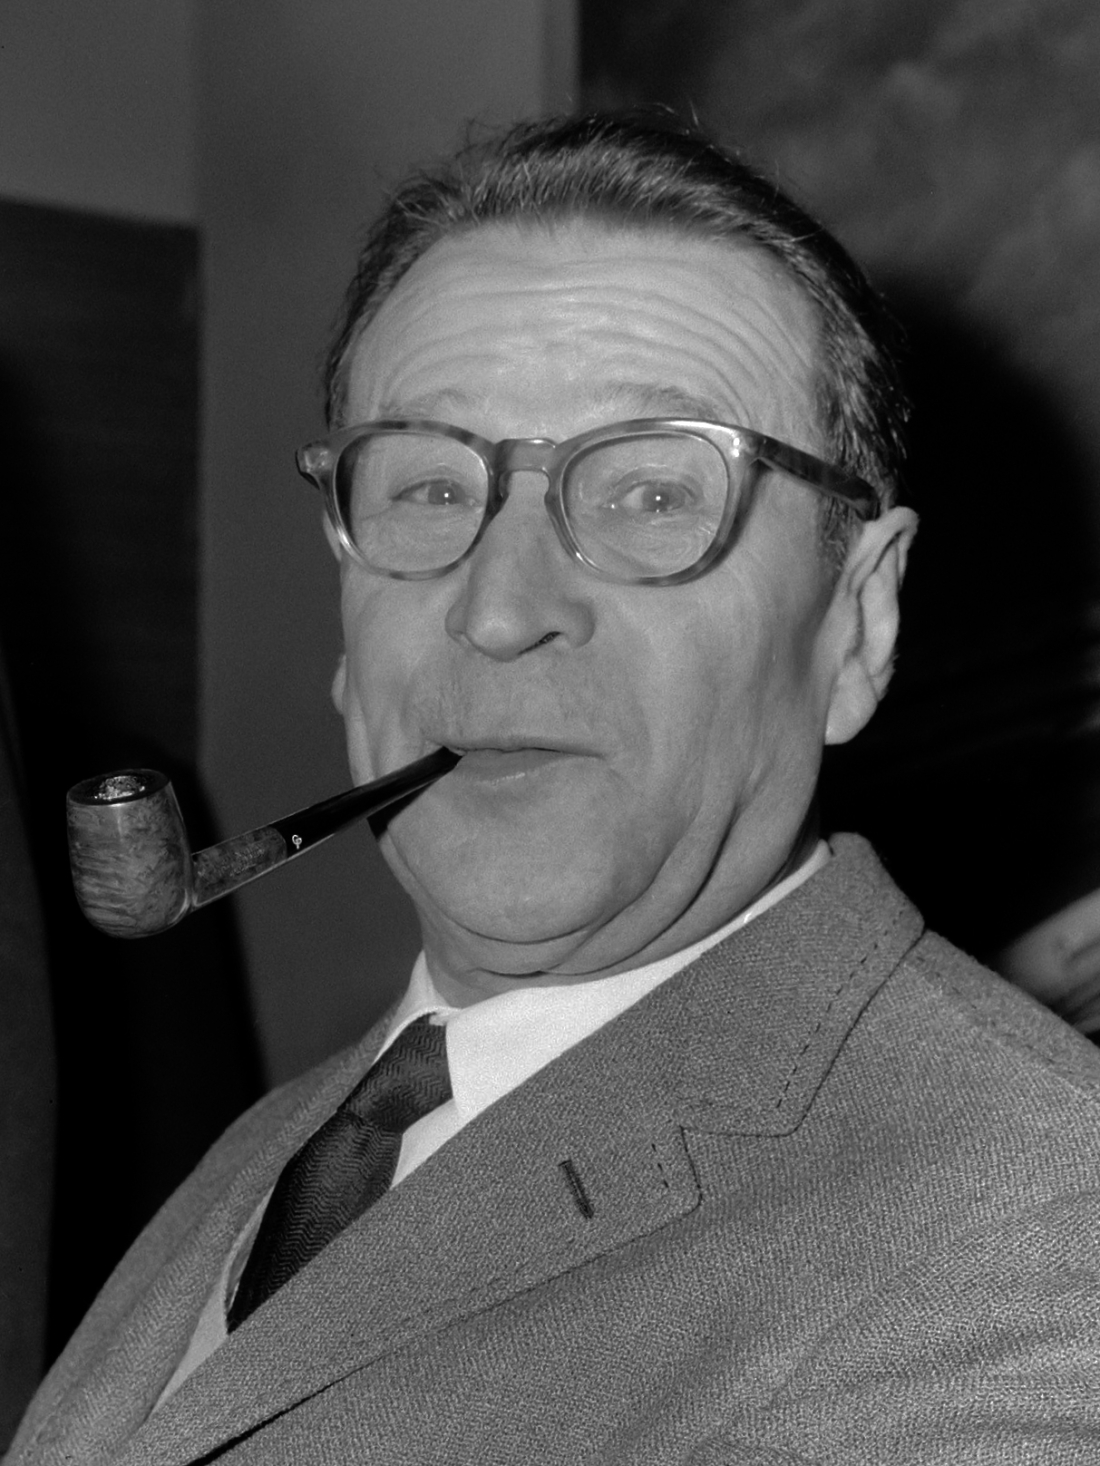  O Ζωρζ Σιμενόν το 1965.  